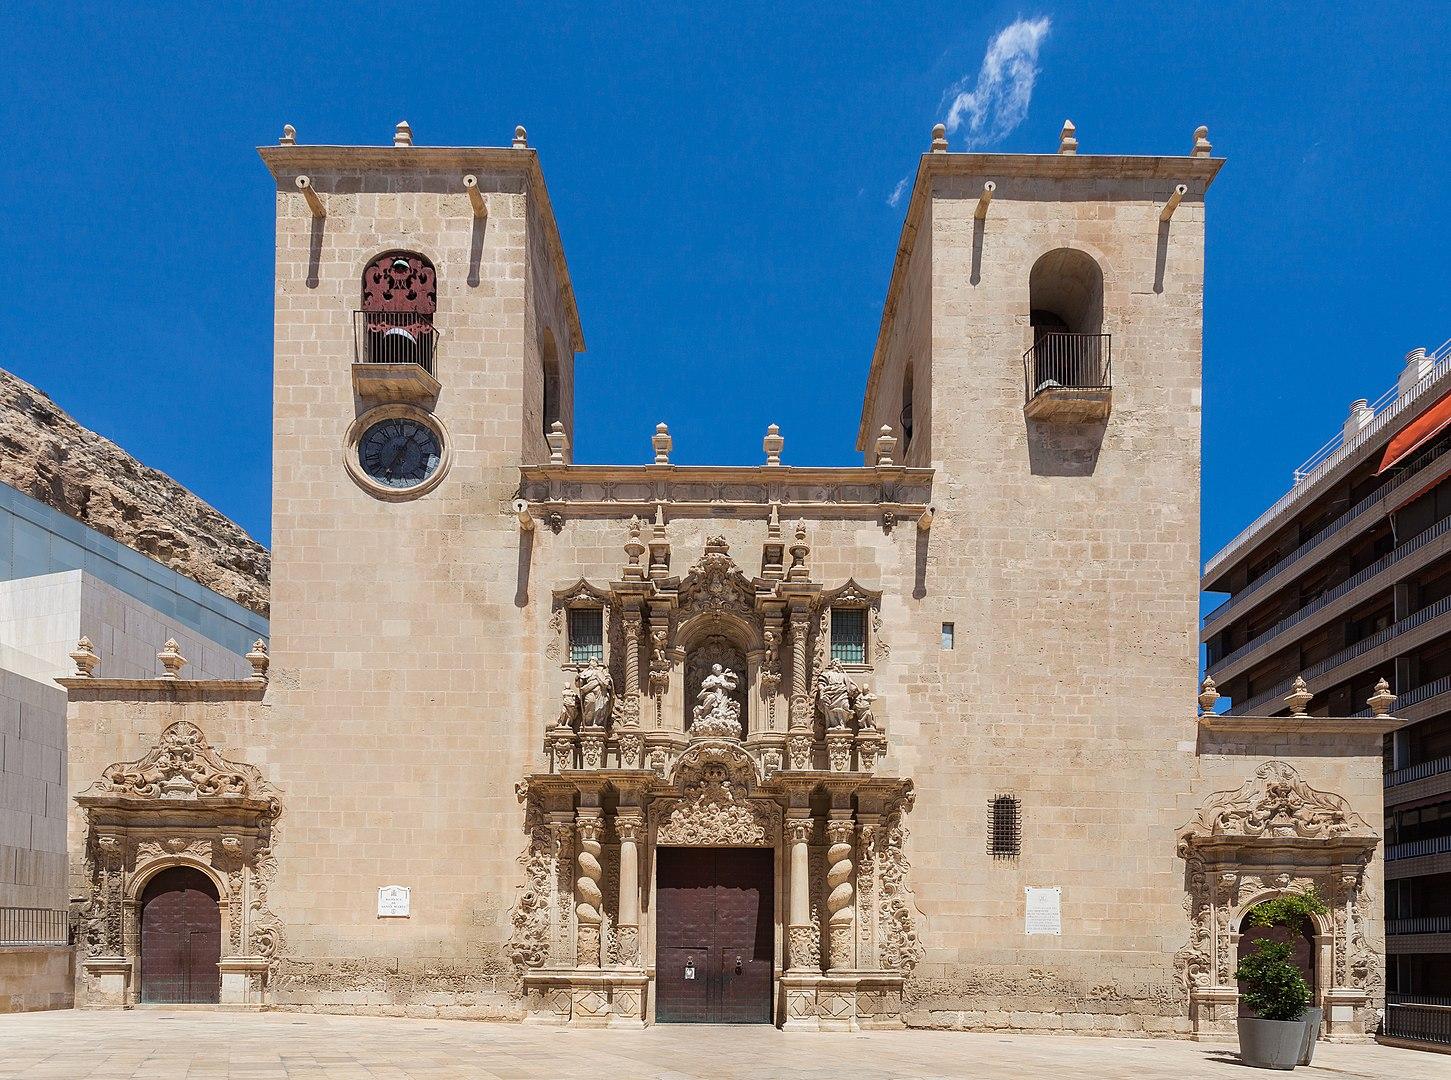 Базилика Санта-Мария